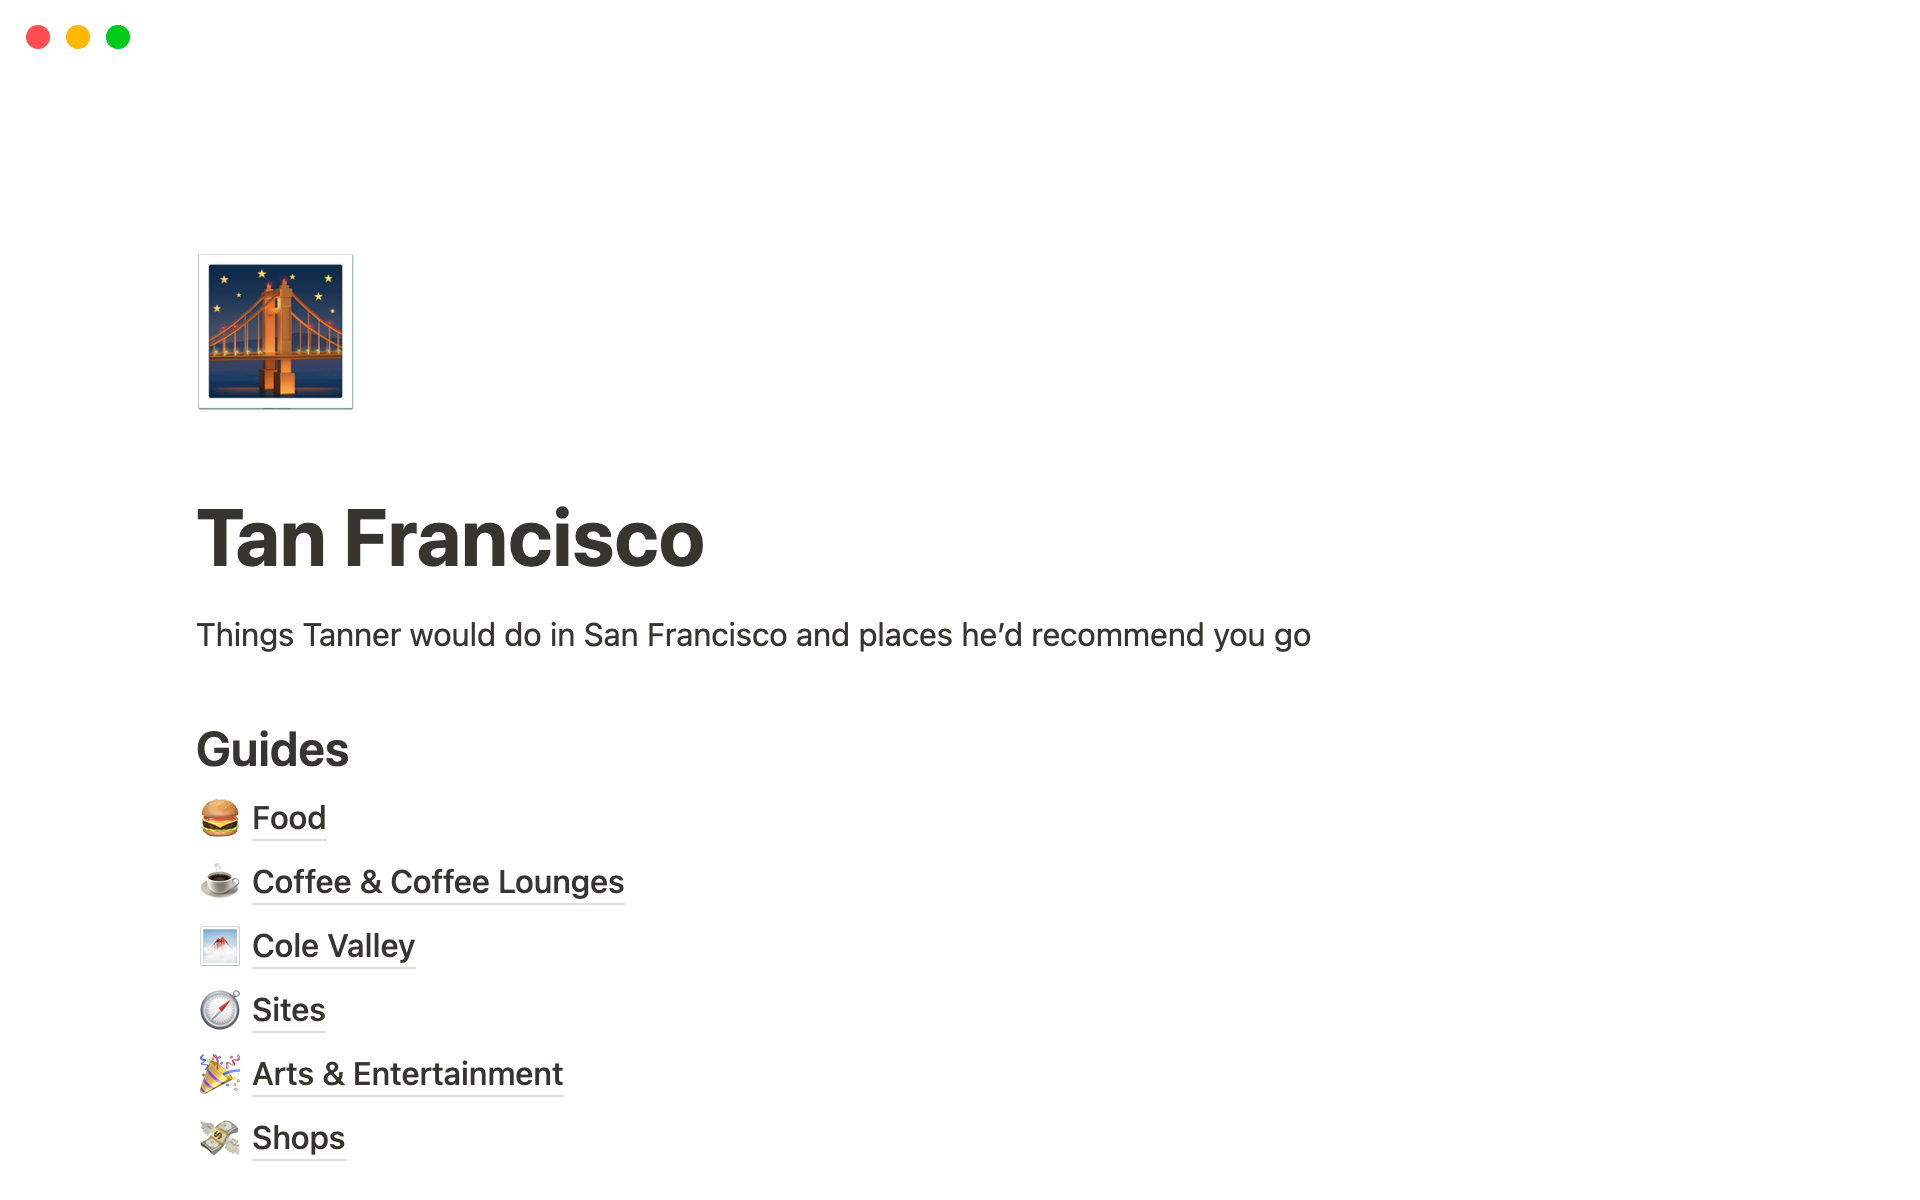 Eine Vorlagenvorschau für Tan Francisco — Tanner's Guide To San Francisco